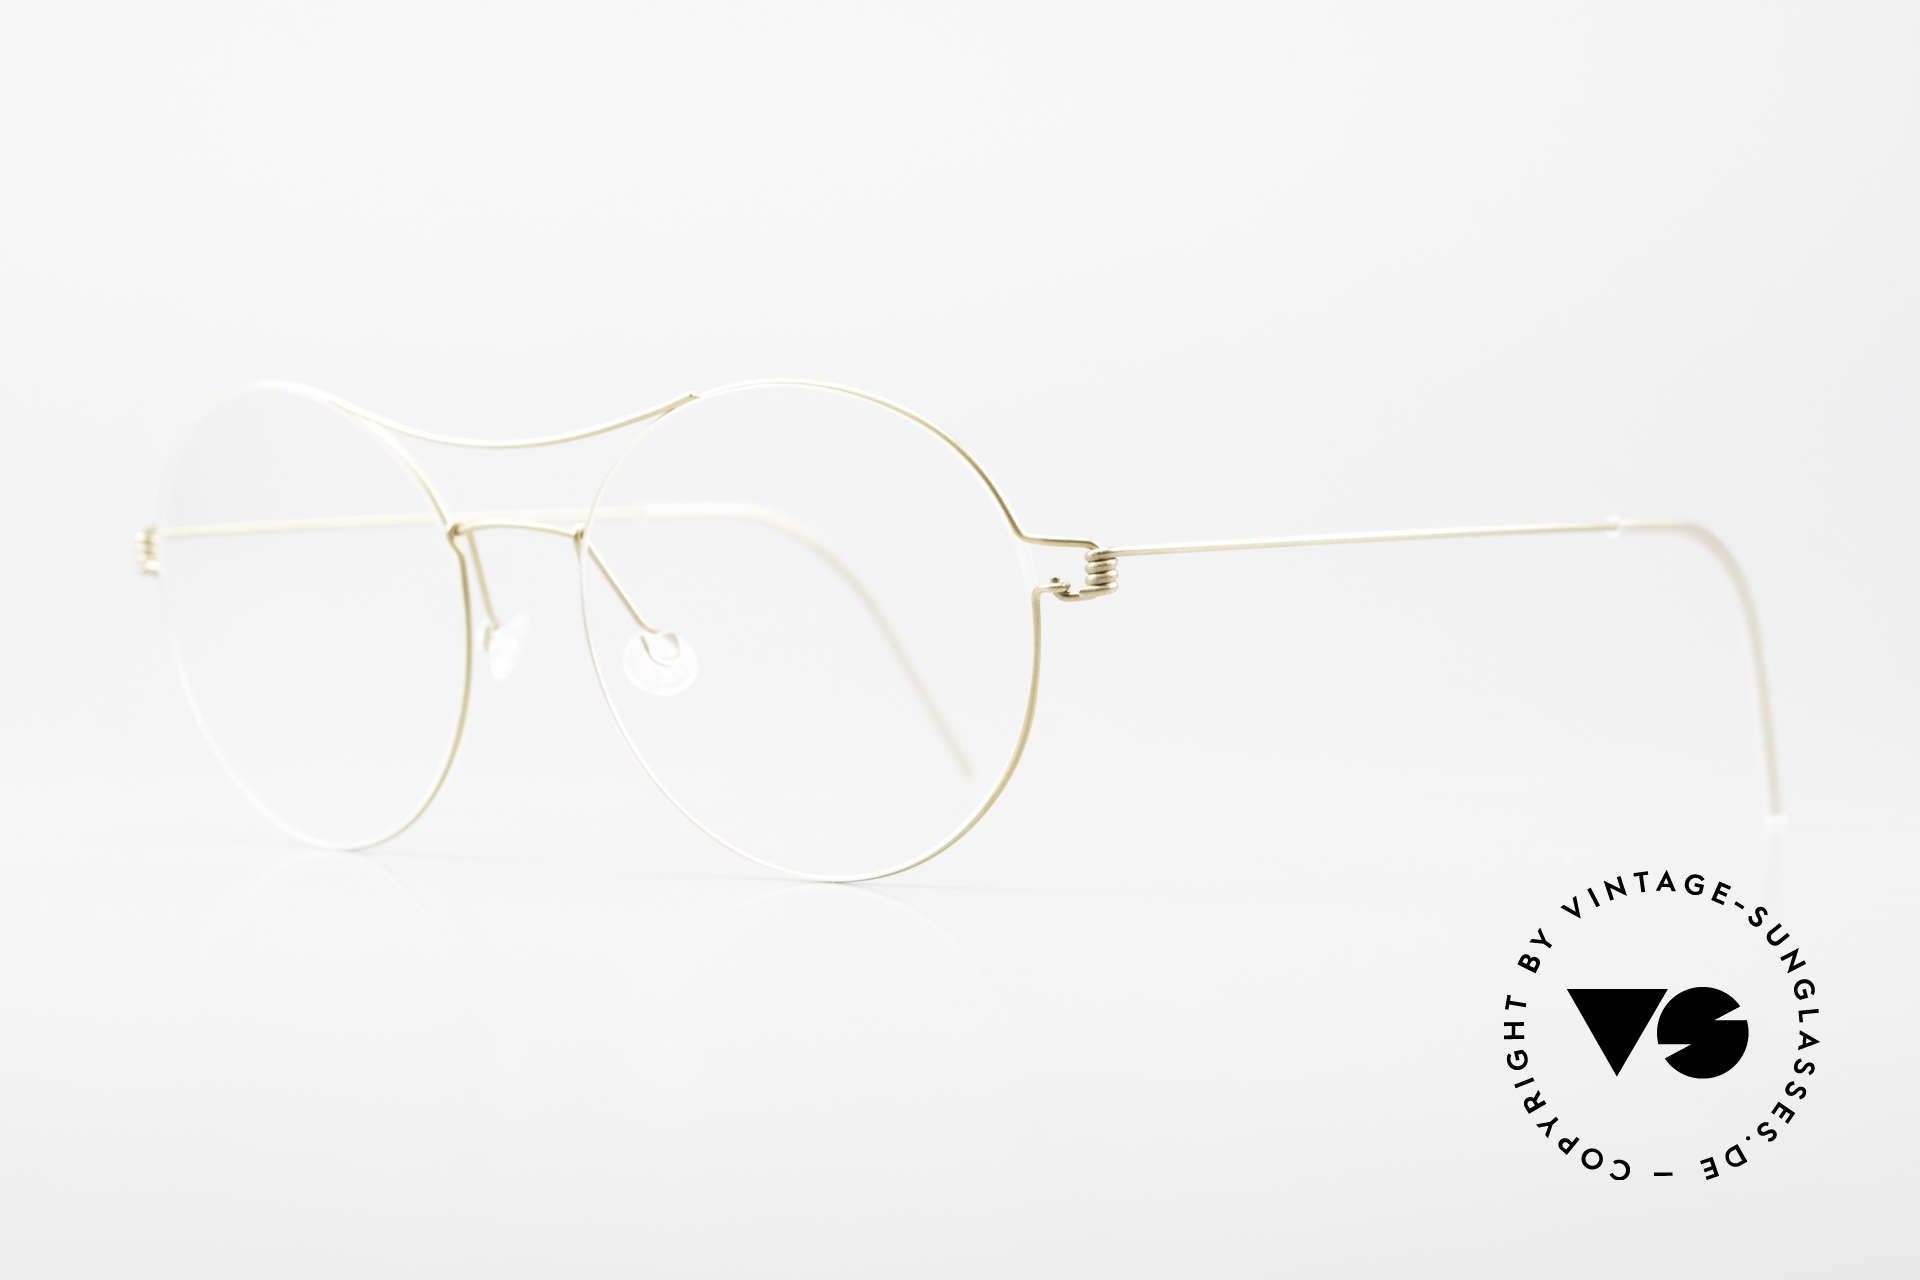 Lindberg Victoria Air Titan Rim Damenbrille Oversized XL Brille, vielfach ausgezeichnet hinsichtlich Qualität und Design, Passend für Damen